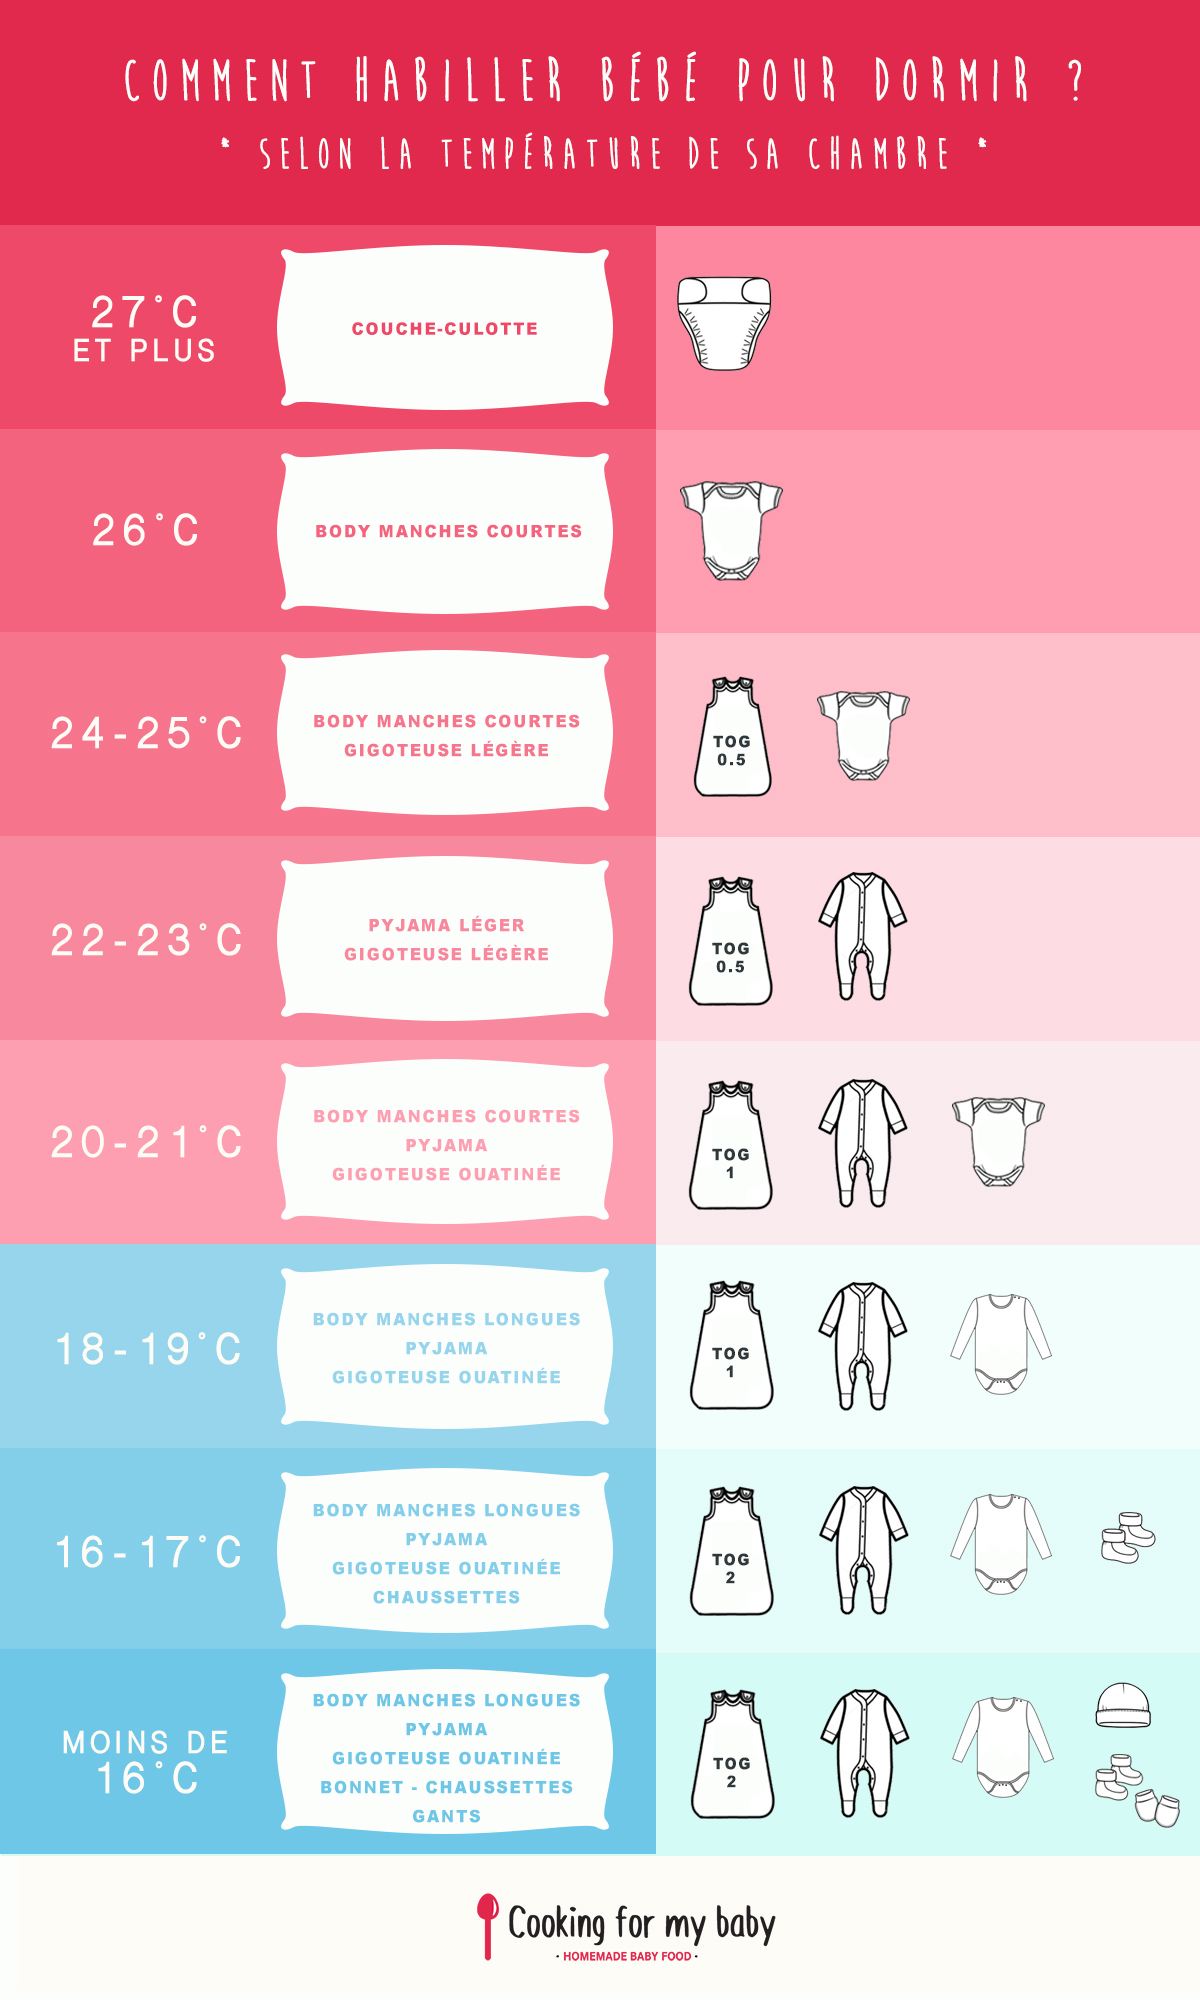 Comment habiller son enfant ou bébé selon la température du jour ?